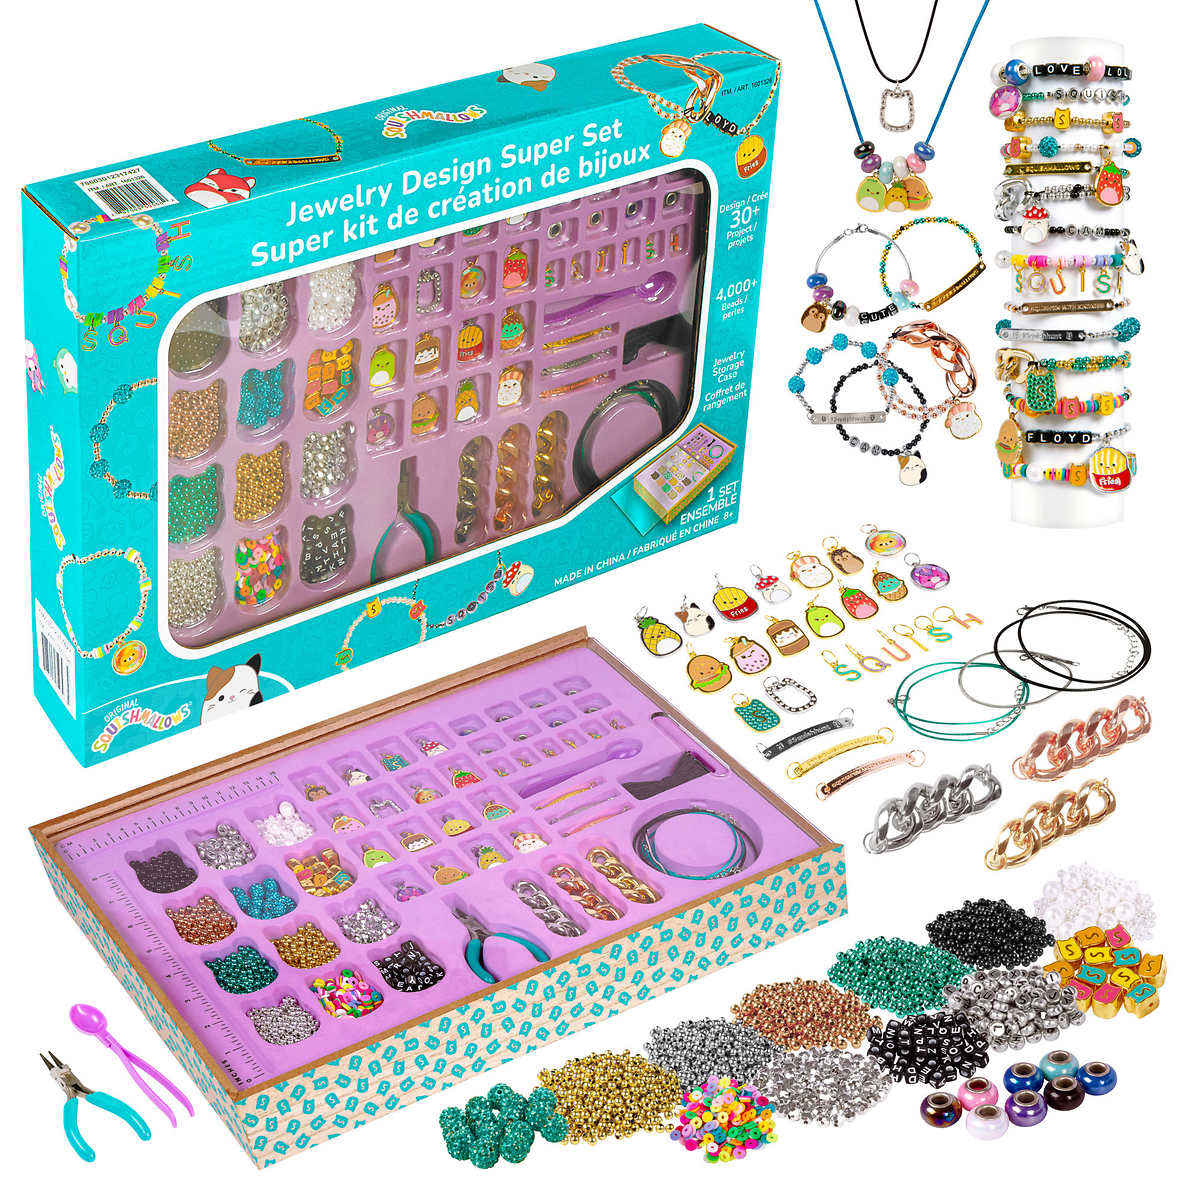 squishmallow-super-kit-création-bijoux-jewelry-design-super-set